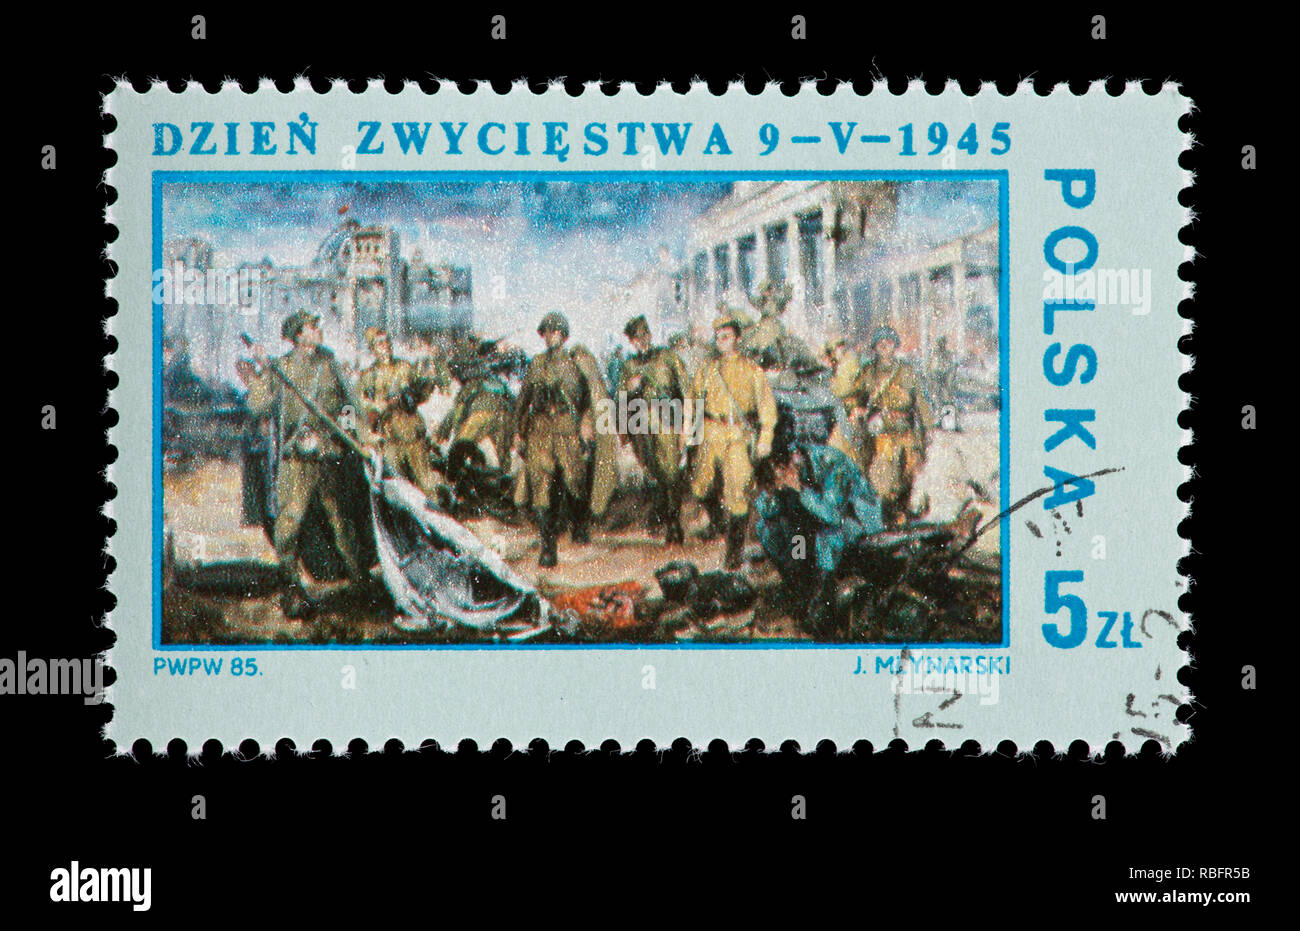 Briefmarke her Polen Darstellung des Jozef Mlynarski Malerei" Sieg, Berlin 1945", 40-jähriges Bestehen, die Befreiung Polens von der deutschen Okkupation Stockfoto